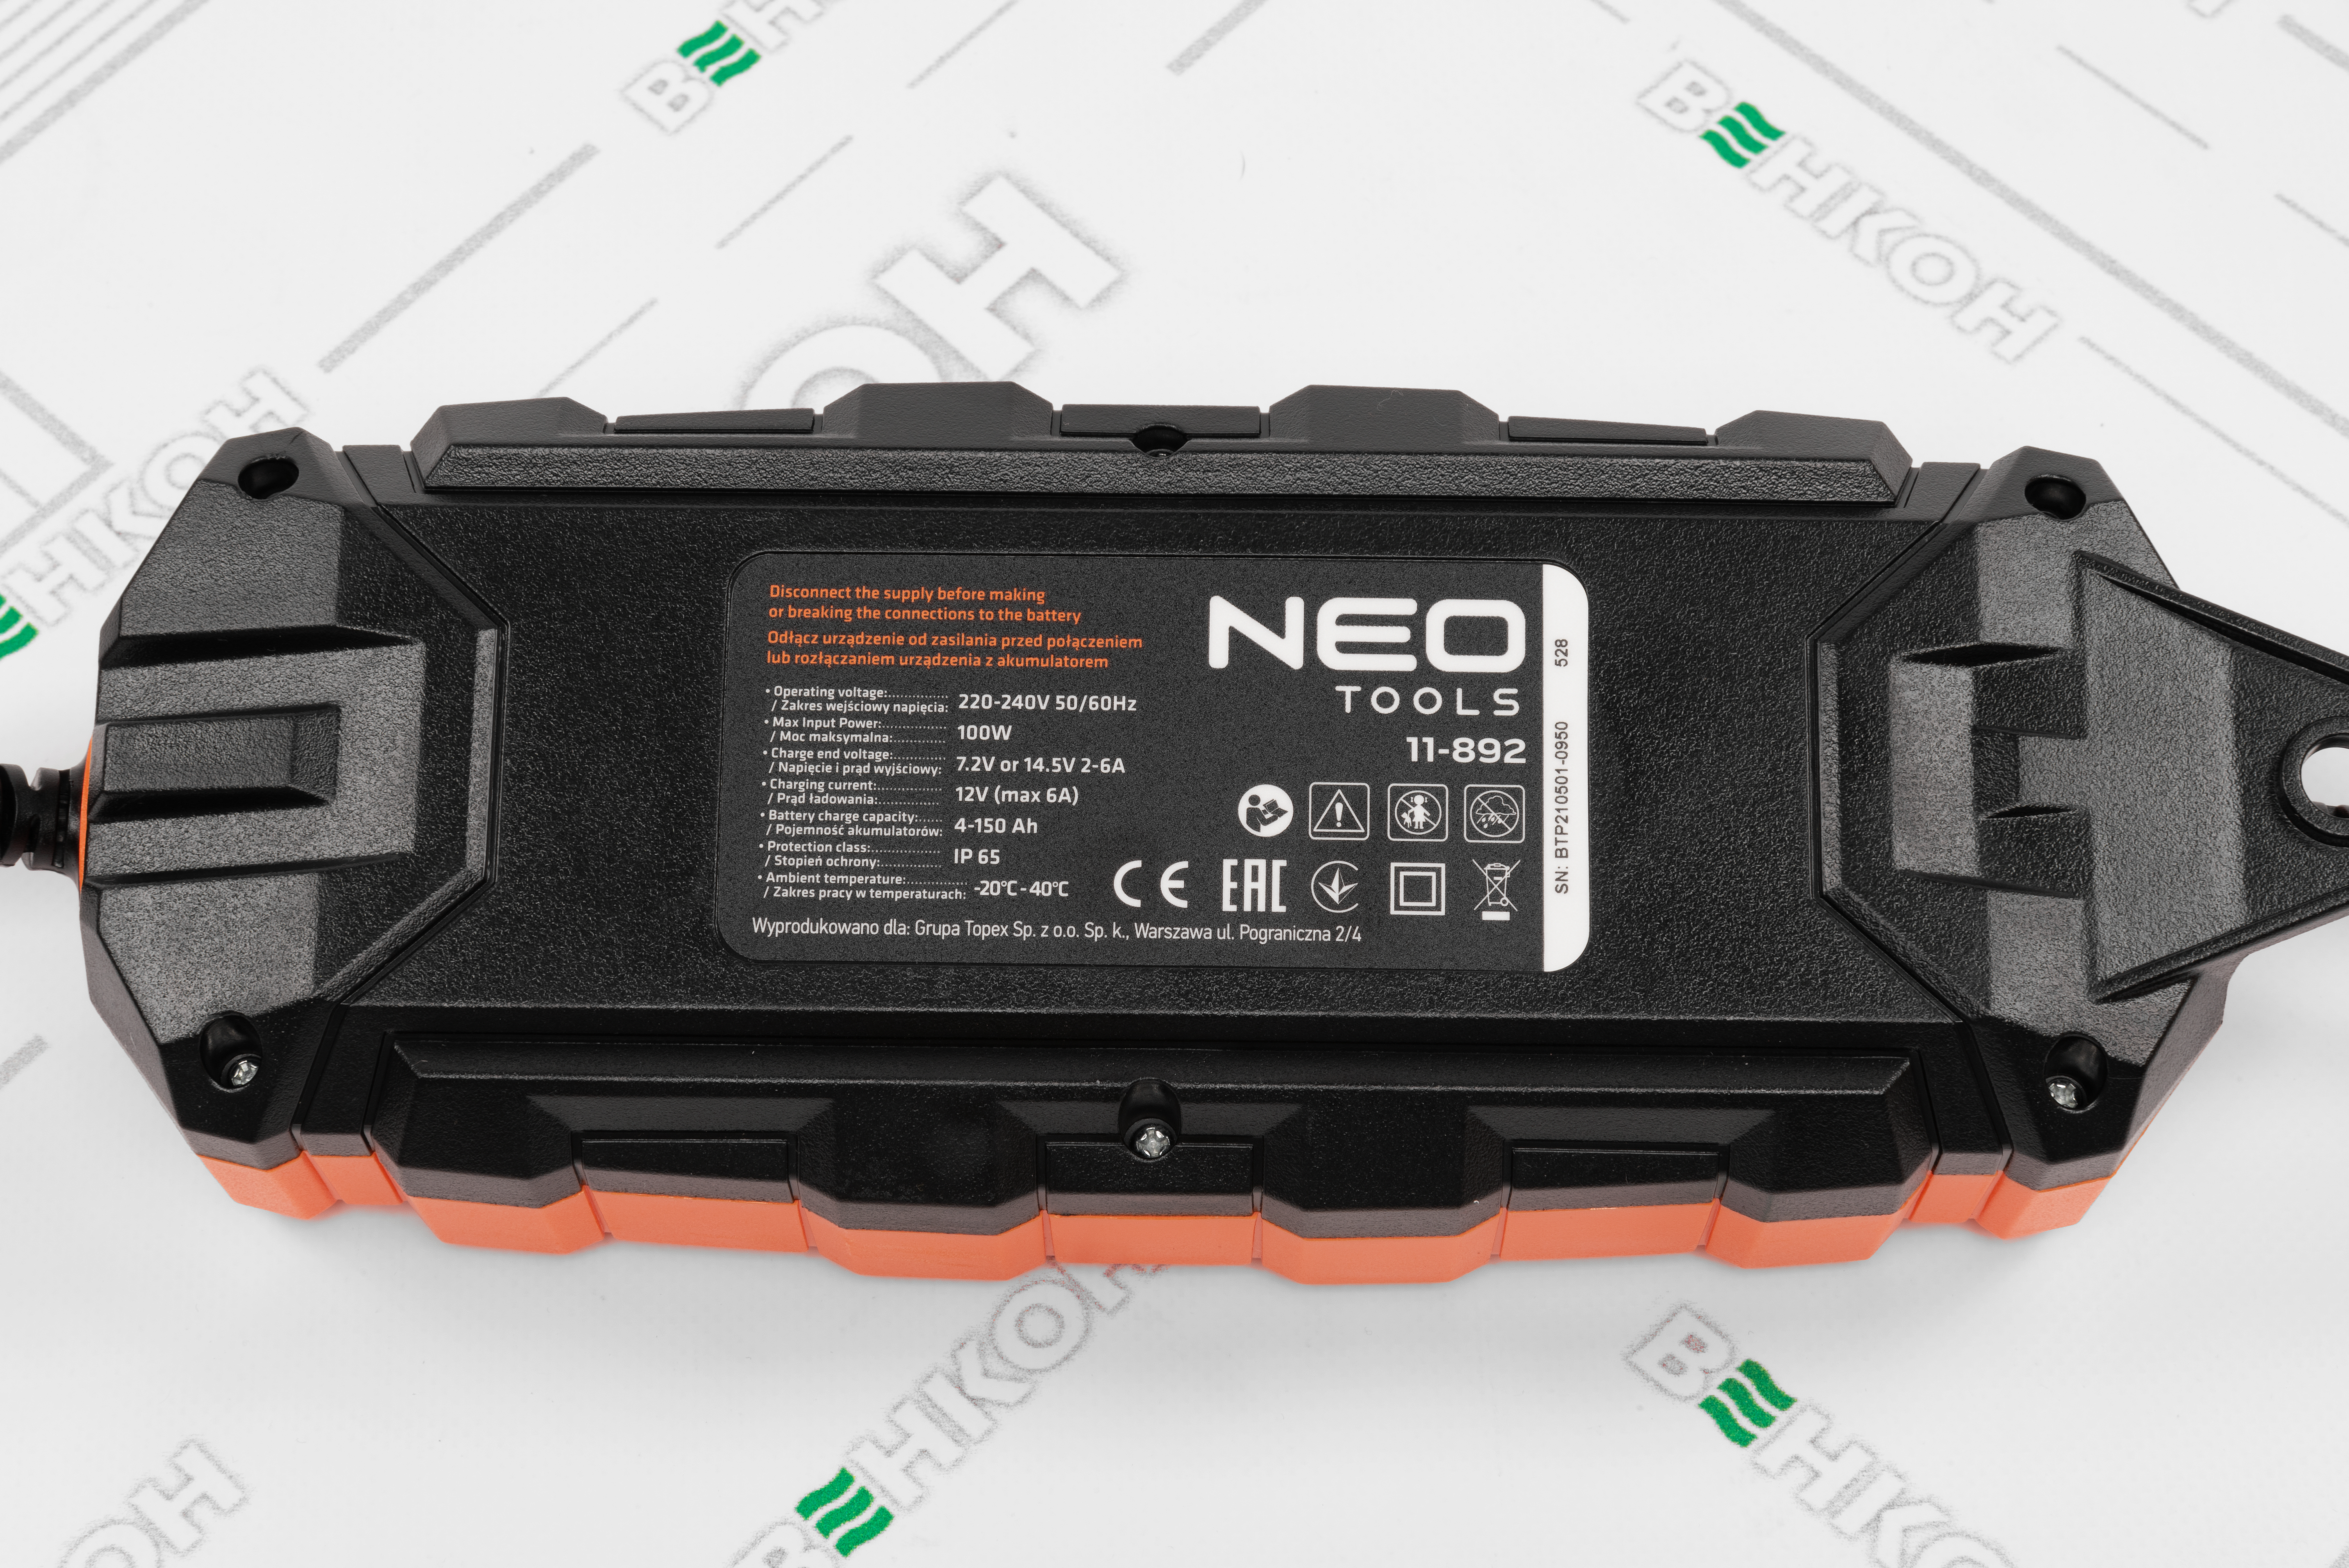 Интеллектуальное зарядное устройство Neo Tools 11-892 отзывы - изображения 5